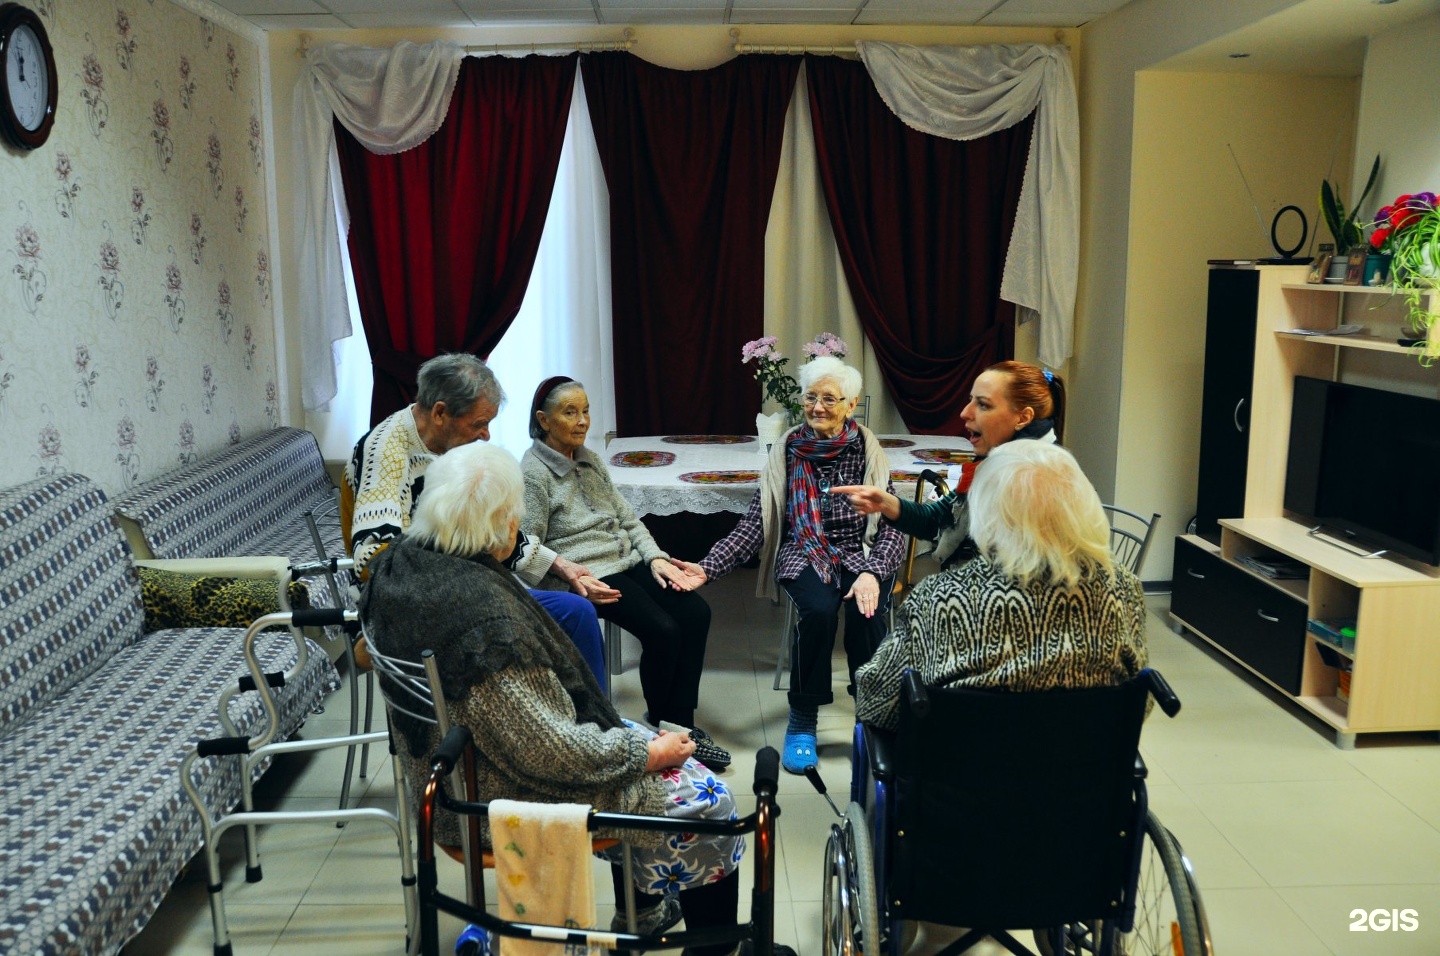 Дом престарелых в СПБ. Пансионат для престарелых в СПБ. Уютный уголок пансионат для пожилых в СПБ. Пансионат для больных Альцгеймером. Пансионат для пожилых в спб доброта